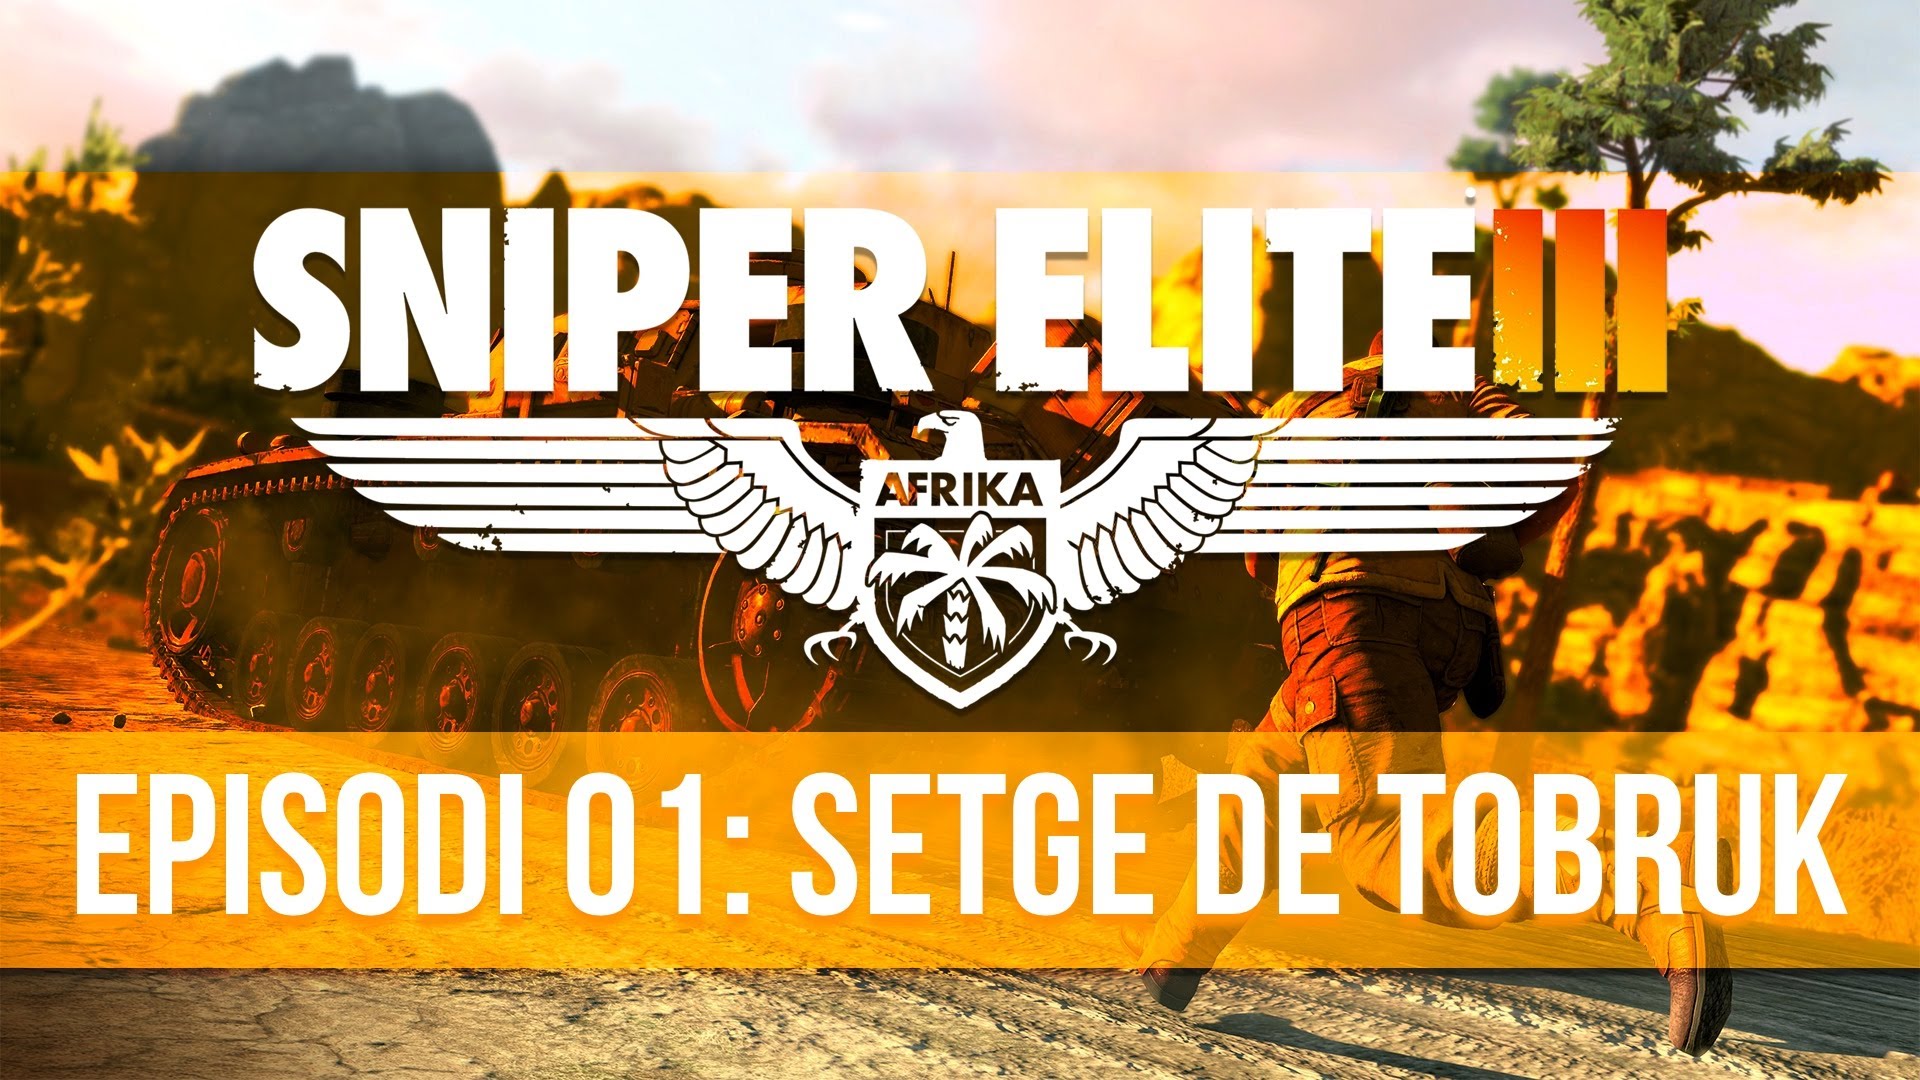 Sniper Elite III - Episodi 1: Setge de Tobruk de Pepiu de Castellar